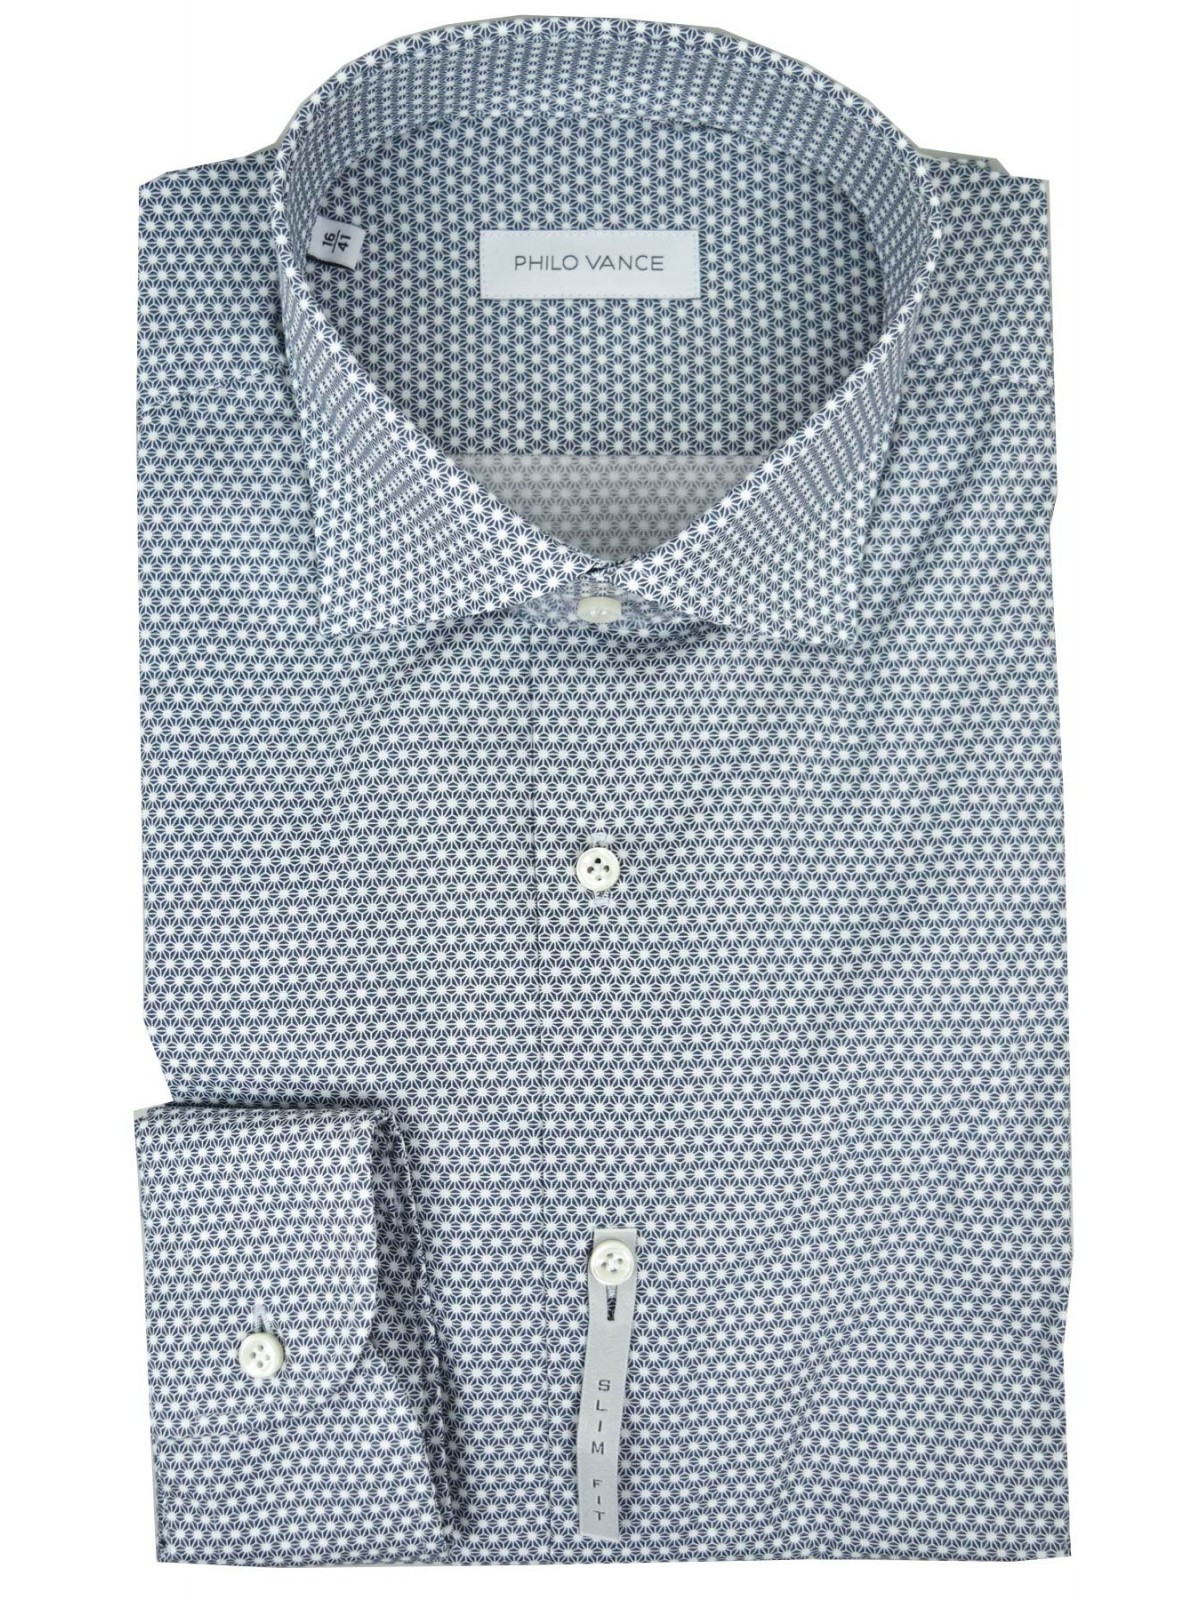 Camicia Uomo Slim Fit Piccola Fantasia Blu su Bianco collo Francese piccolo - Philo Vance - Pico